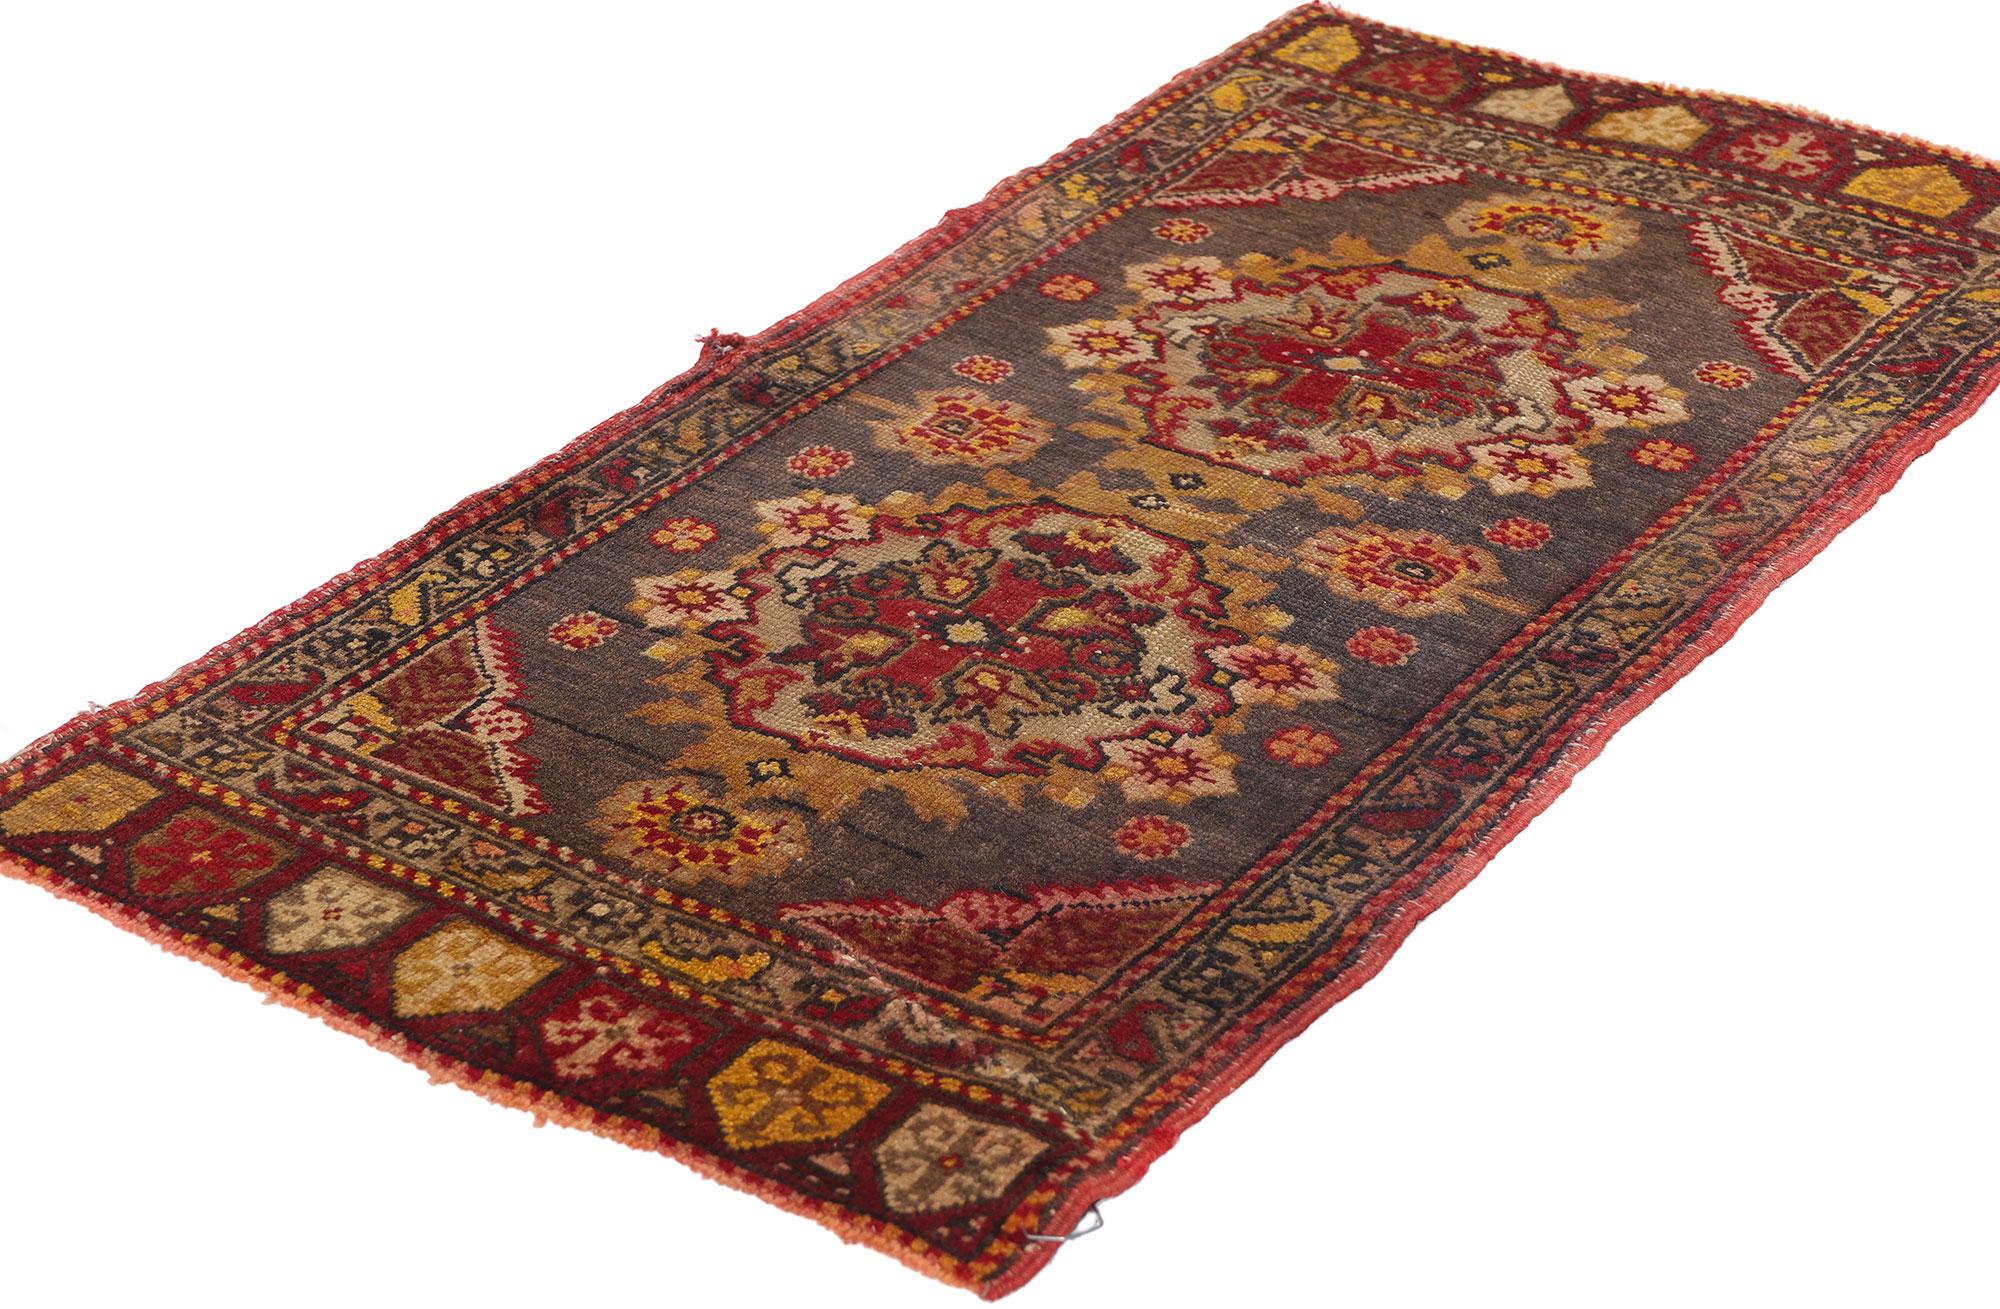 51200 Türkischer Yastik-Teppich Vintage, 01'06 x 02'11. Türkische Yastik-Teppiche, auch als 